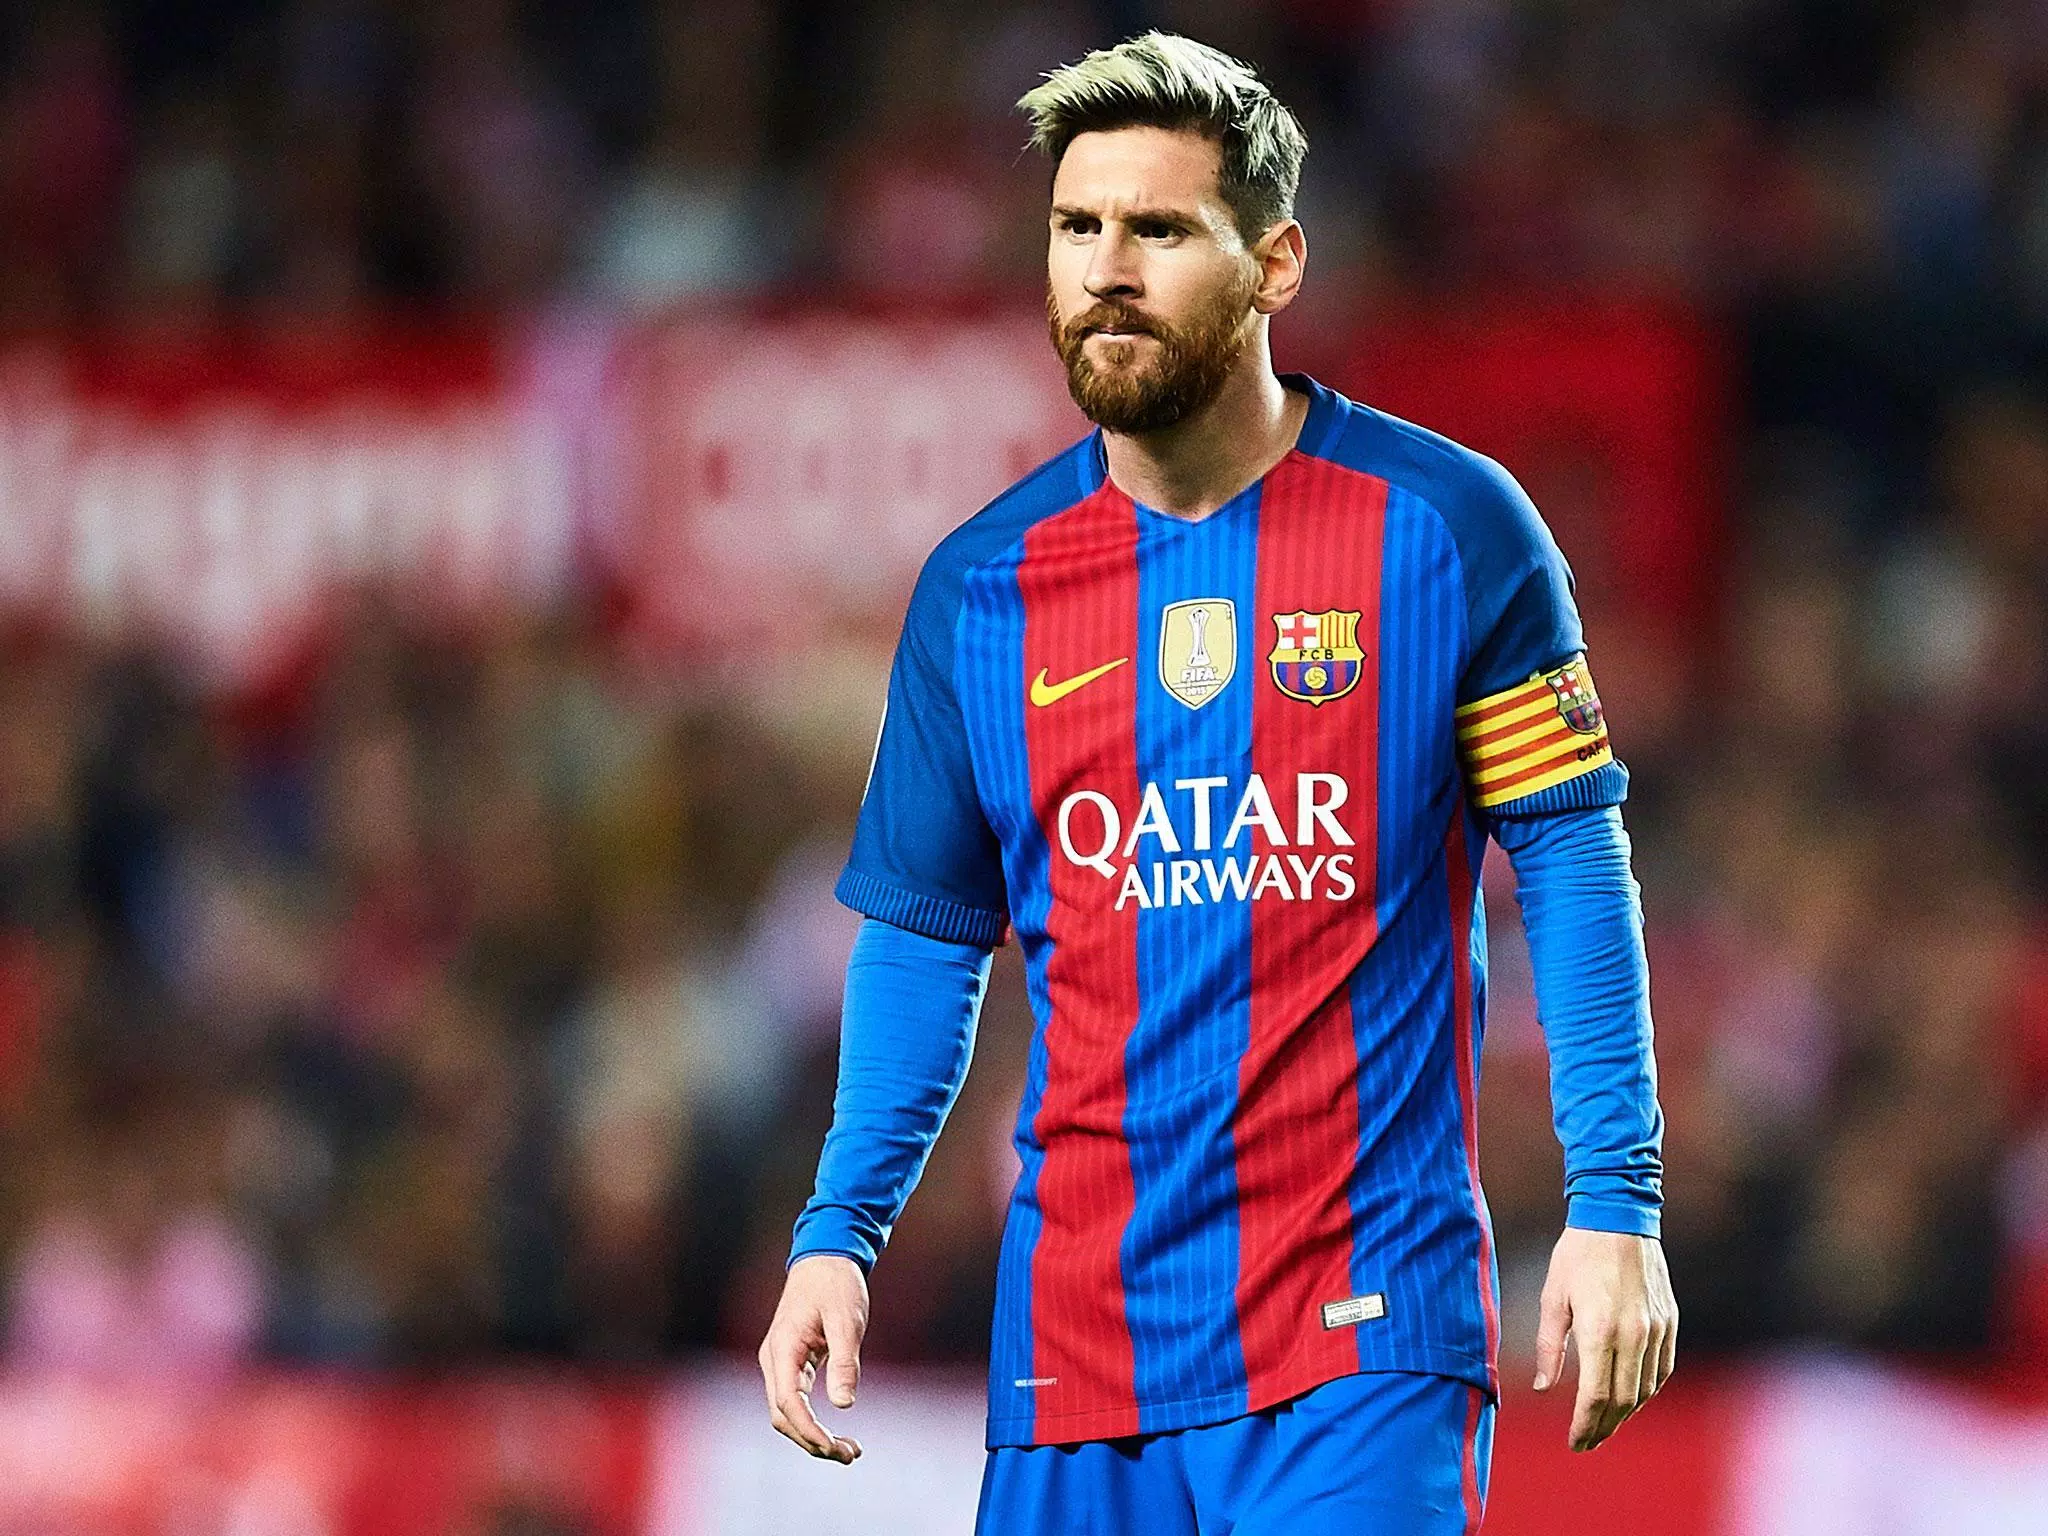 Bạn đang tìm kiếm hình nền Messi với độ phân giải cao nhất? Đừng bỏ lỡ hình ảnh 4K Messi wallpaper tuyệt đẹp. Hình nền này sẽ cho bạn một trải nghiệm sống động và chi tiết nhất về vẻ đẹp và sự kinh ngạc của Lionel Messi. Hãy cùng khám phá những hình ảnh liên quan đến 4K Messi wallpaper ngay bây giờ.